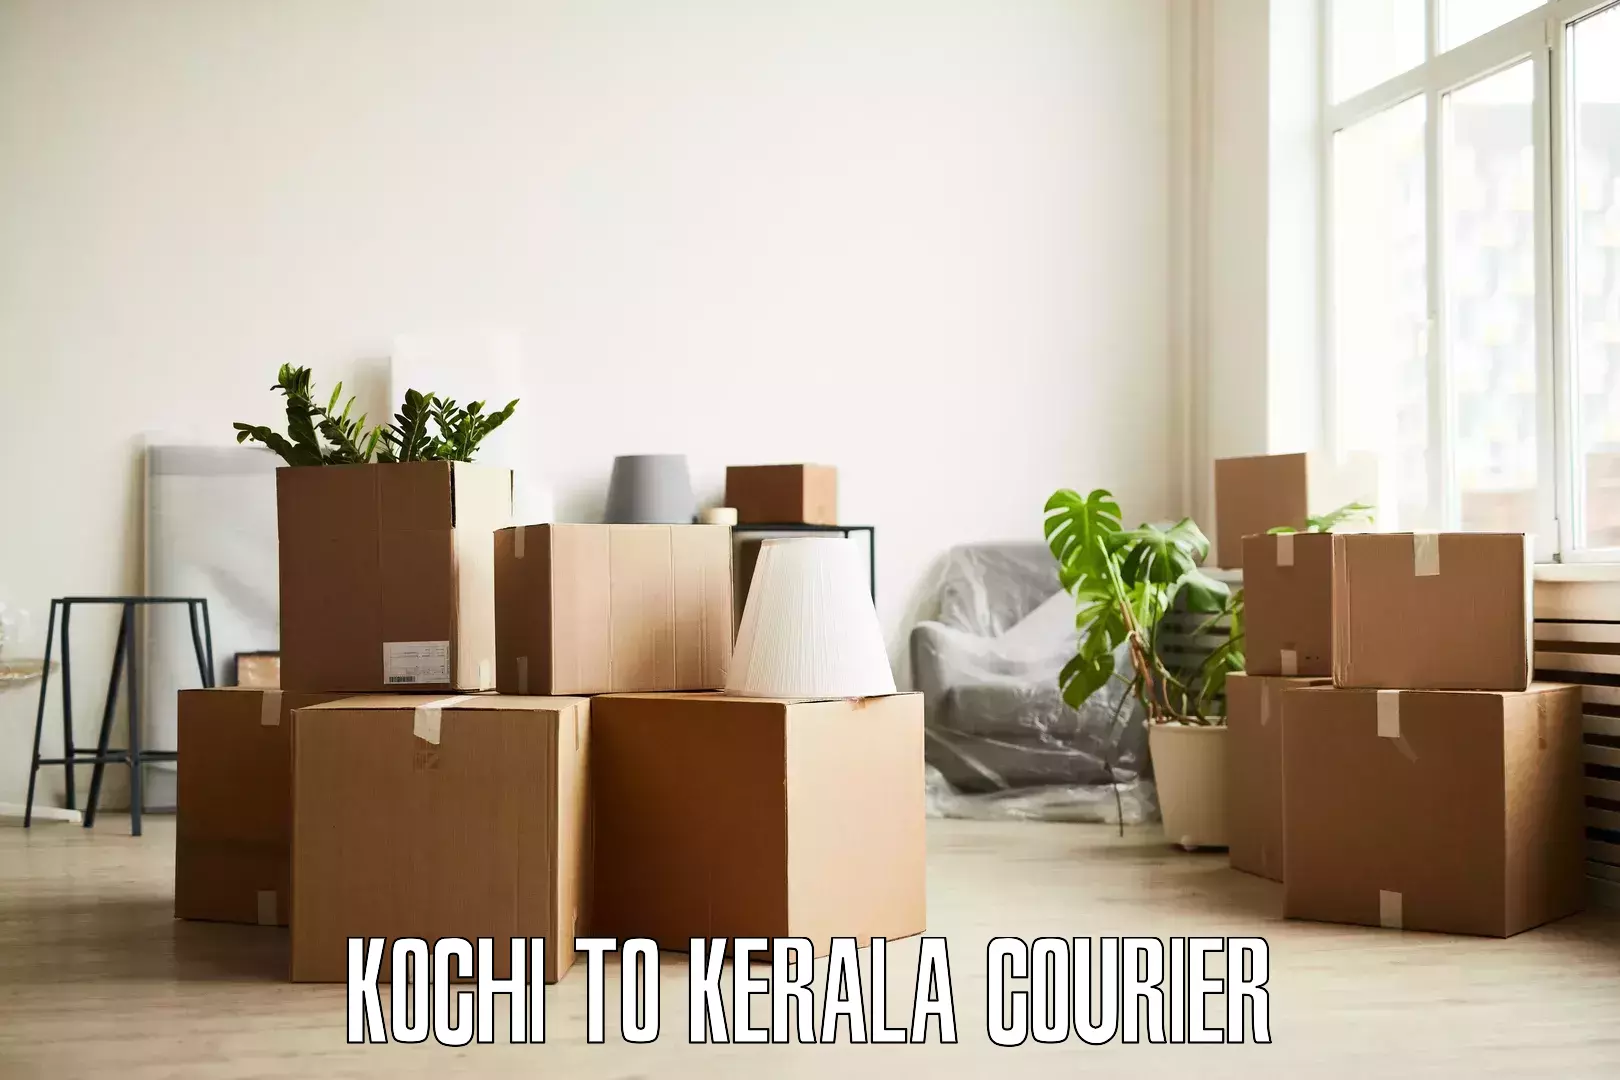 Residential furniture transport Kochi to Kayamkulam